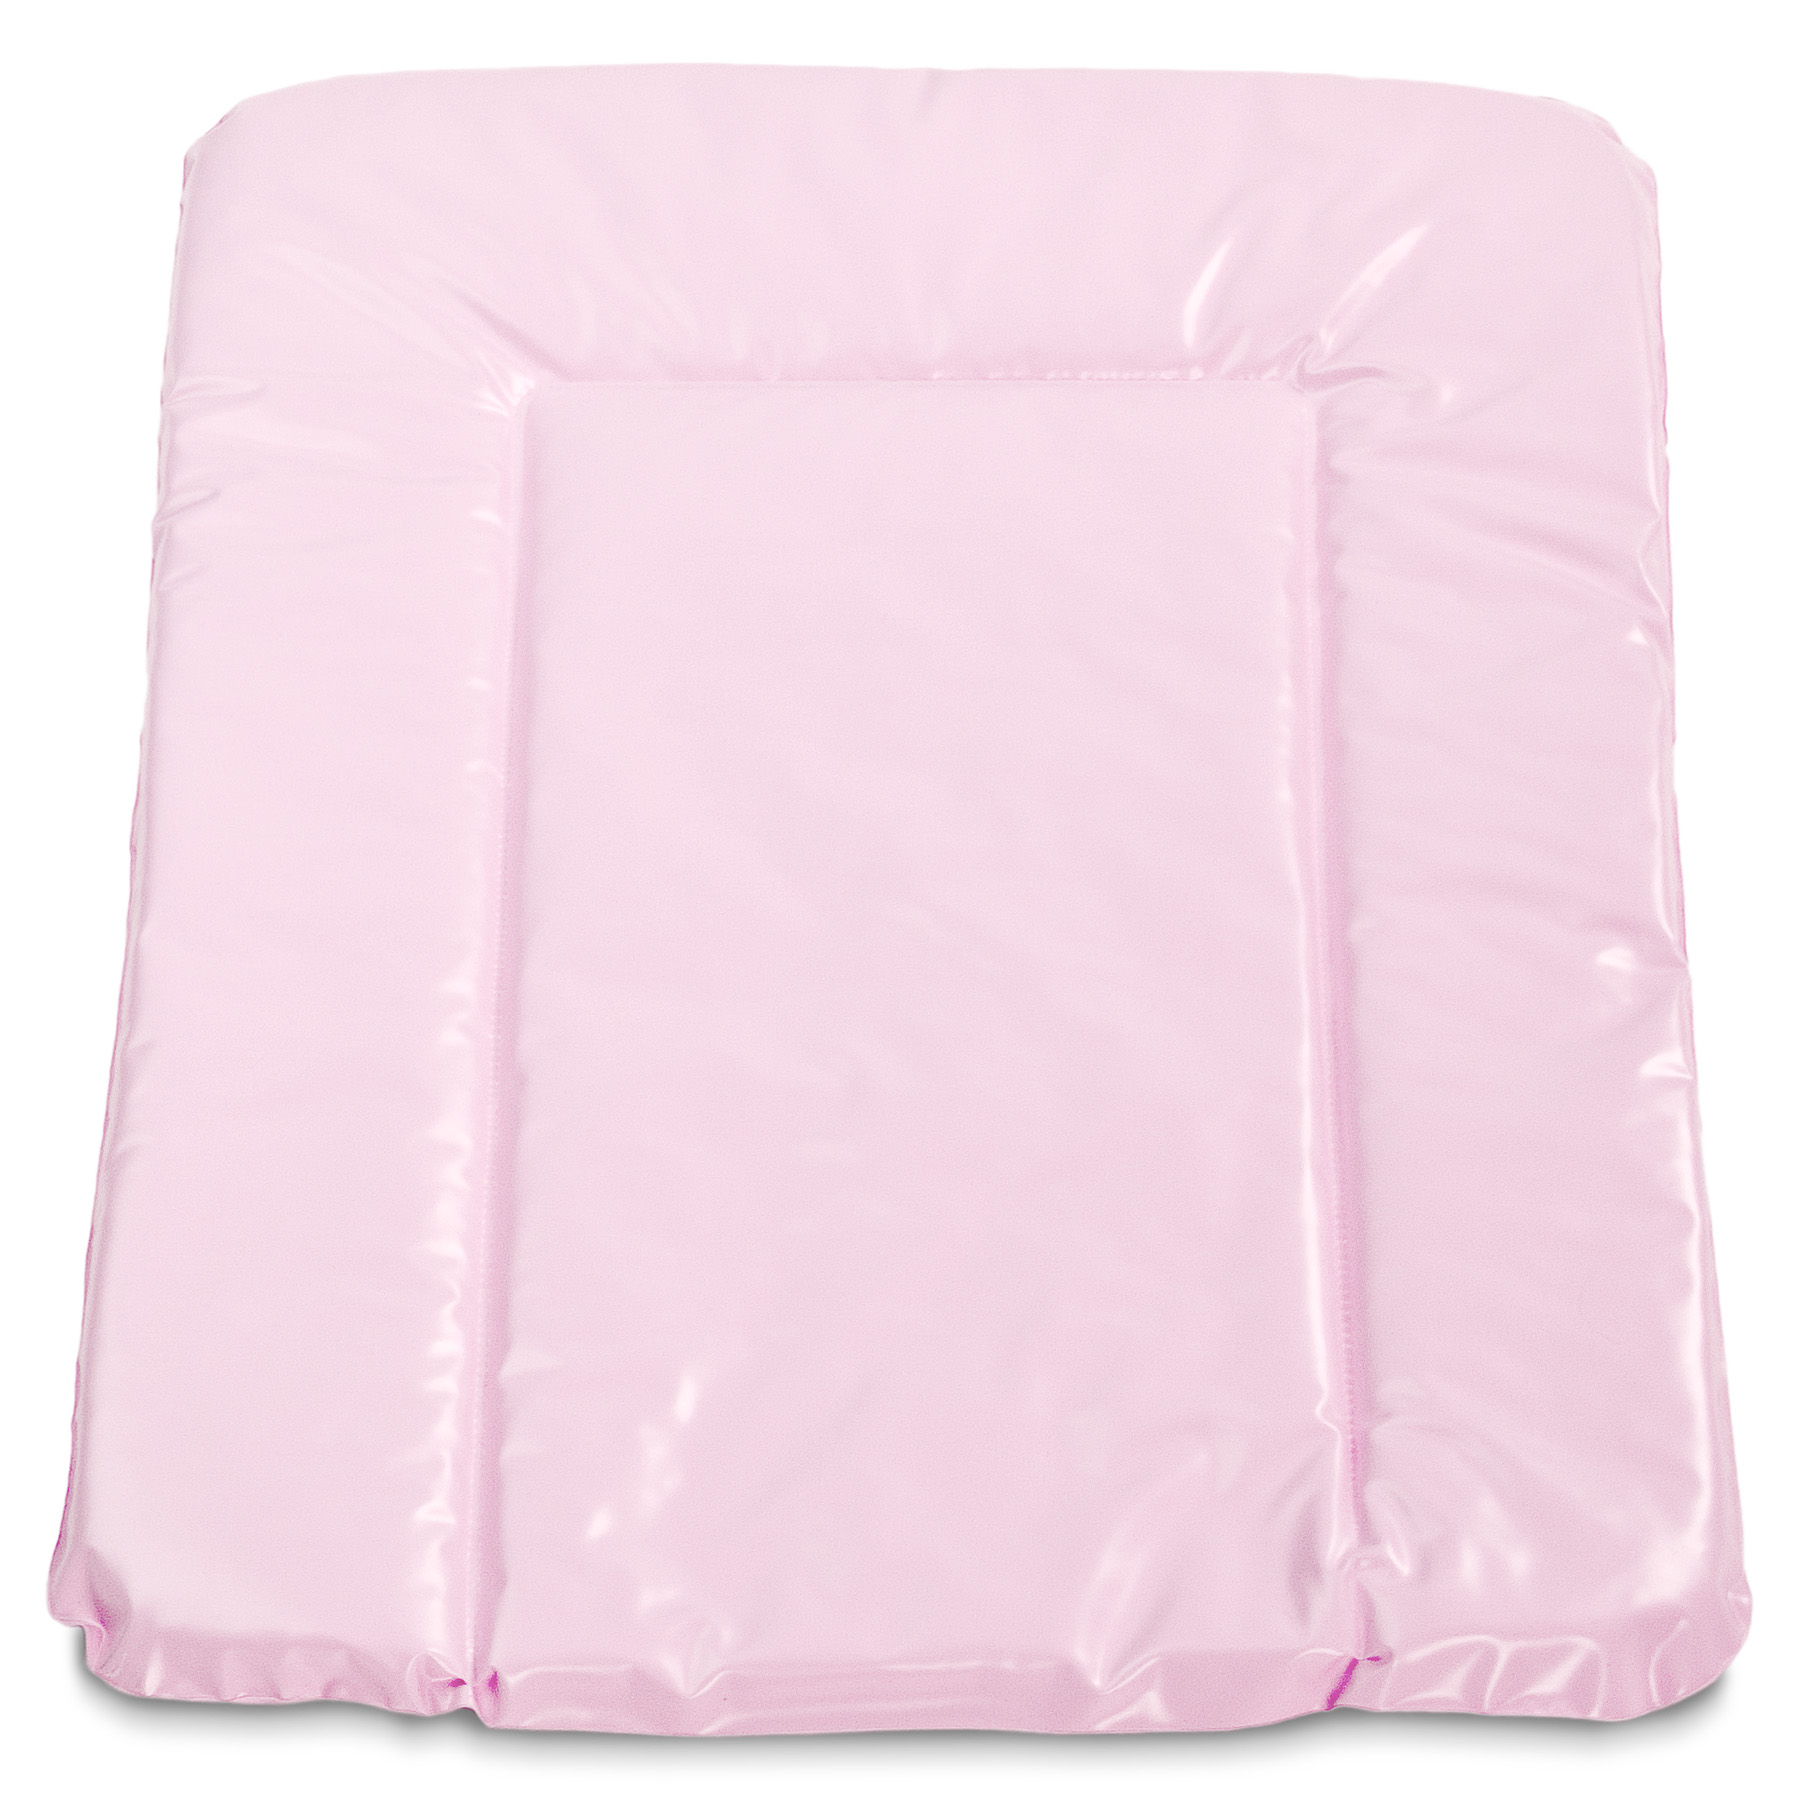 Padding/Changing mat – pink